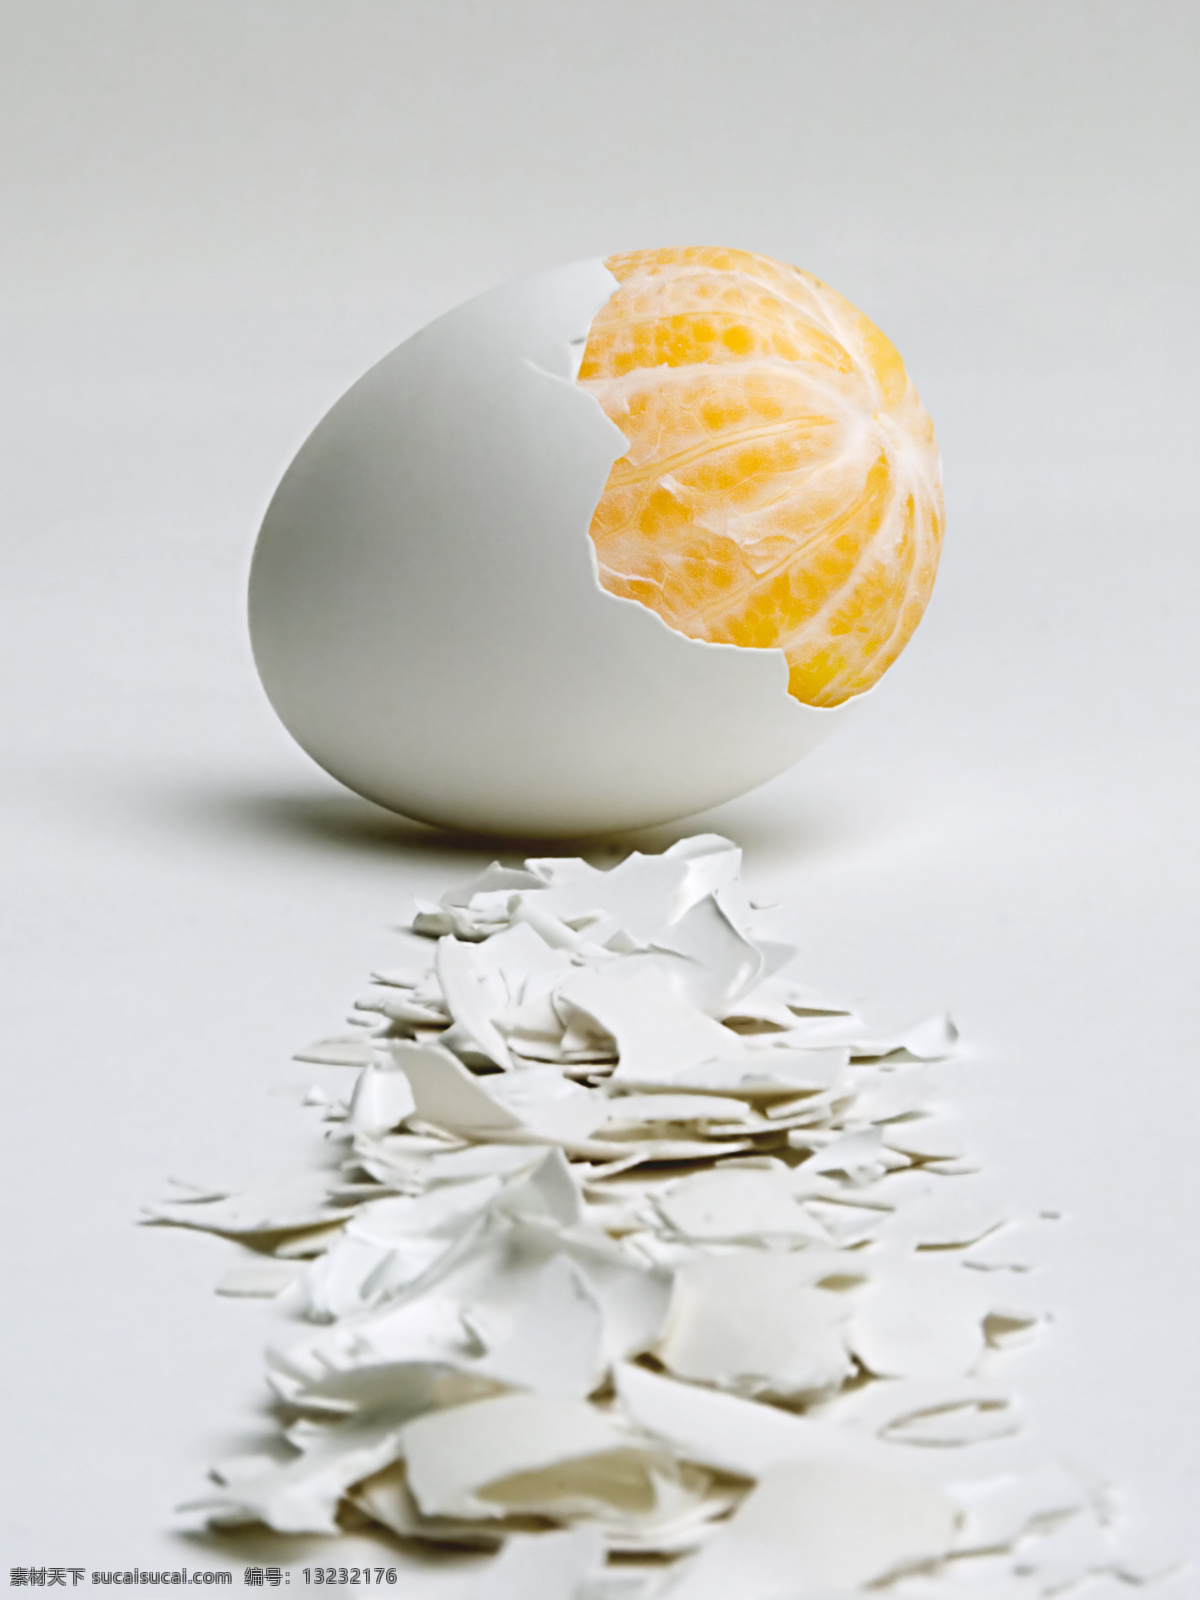 橙子 创意 创意水果 蛋壳 高清图片 鸡蛋 橘子 水果 生物世界 设计素材 模板下载 psd源文件